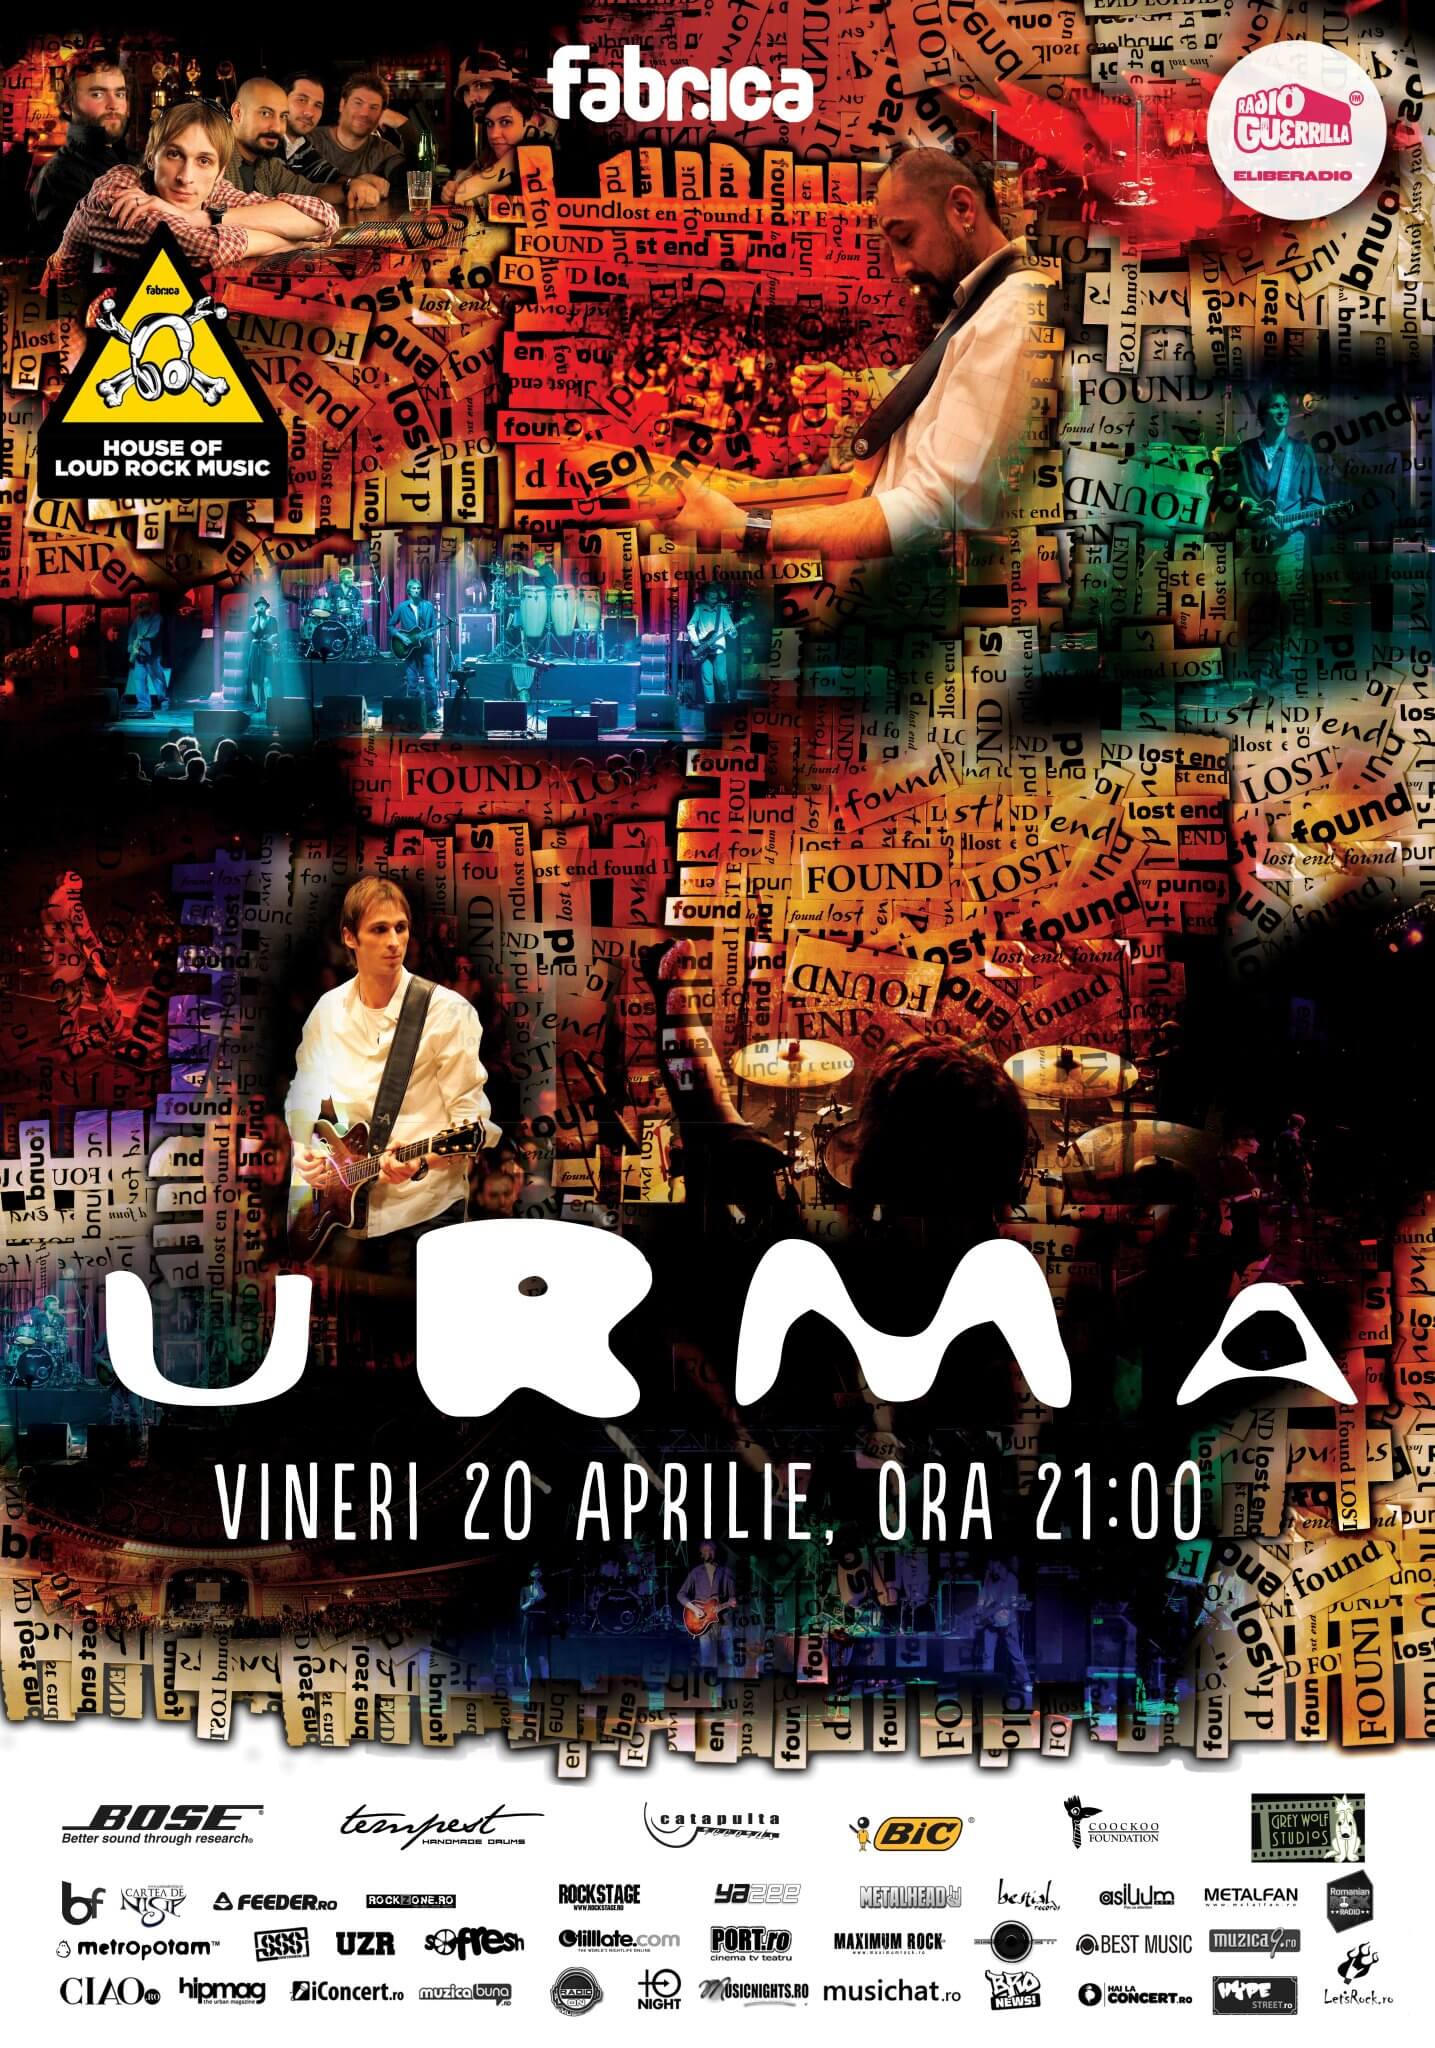 Concert Urma